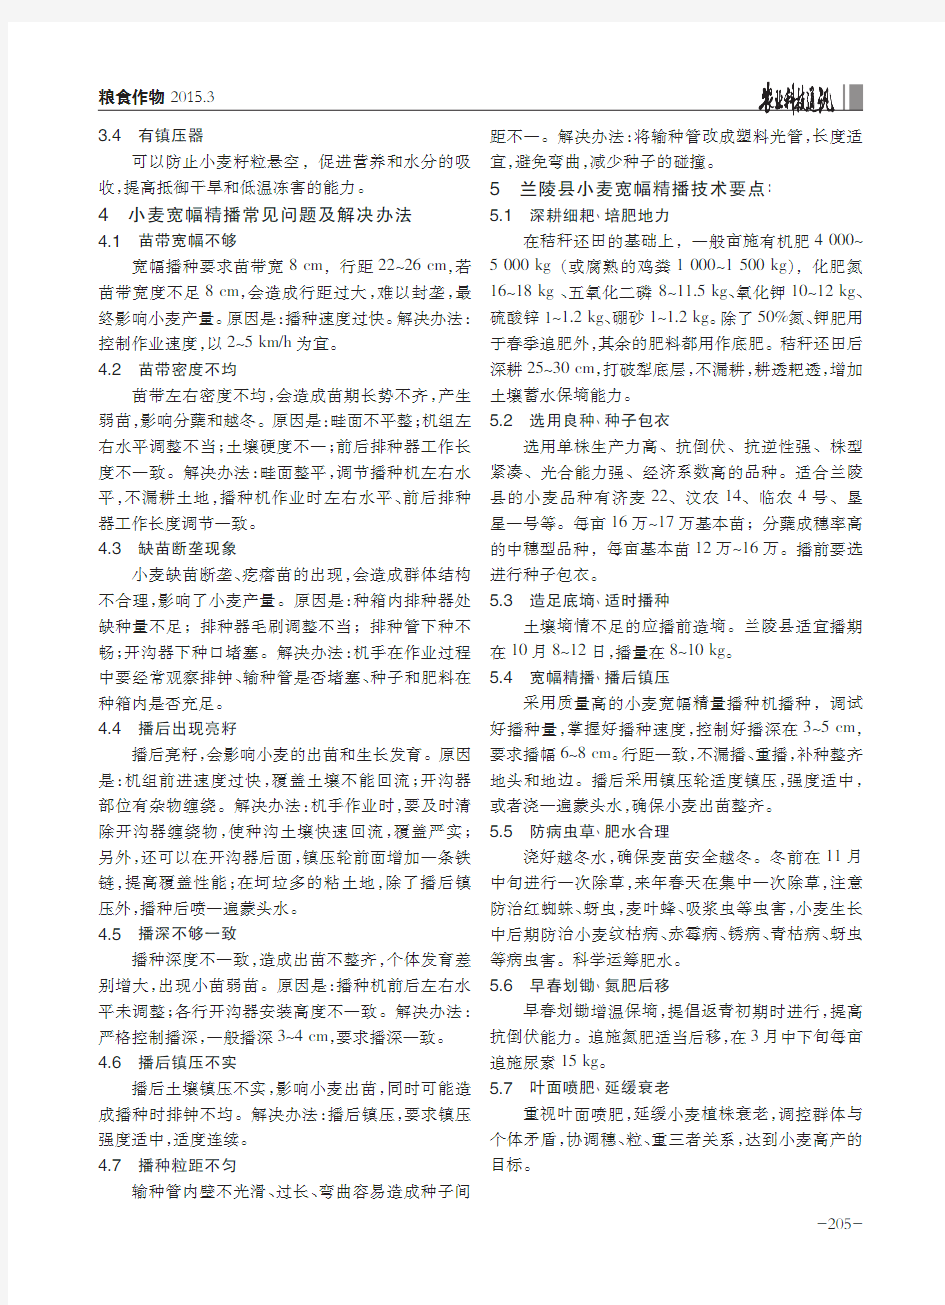 黄淮海地区——山东省兰陵县小麦宽幅精播栽培技术应用